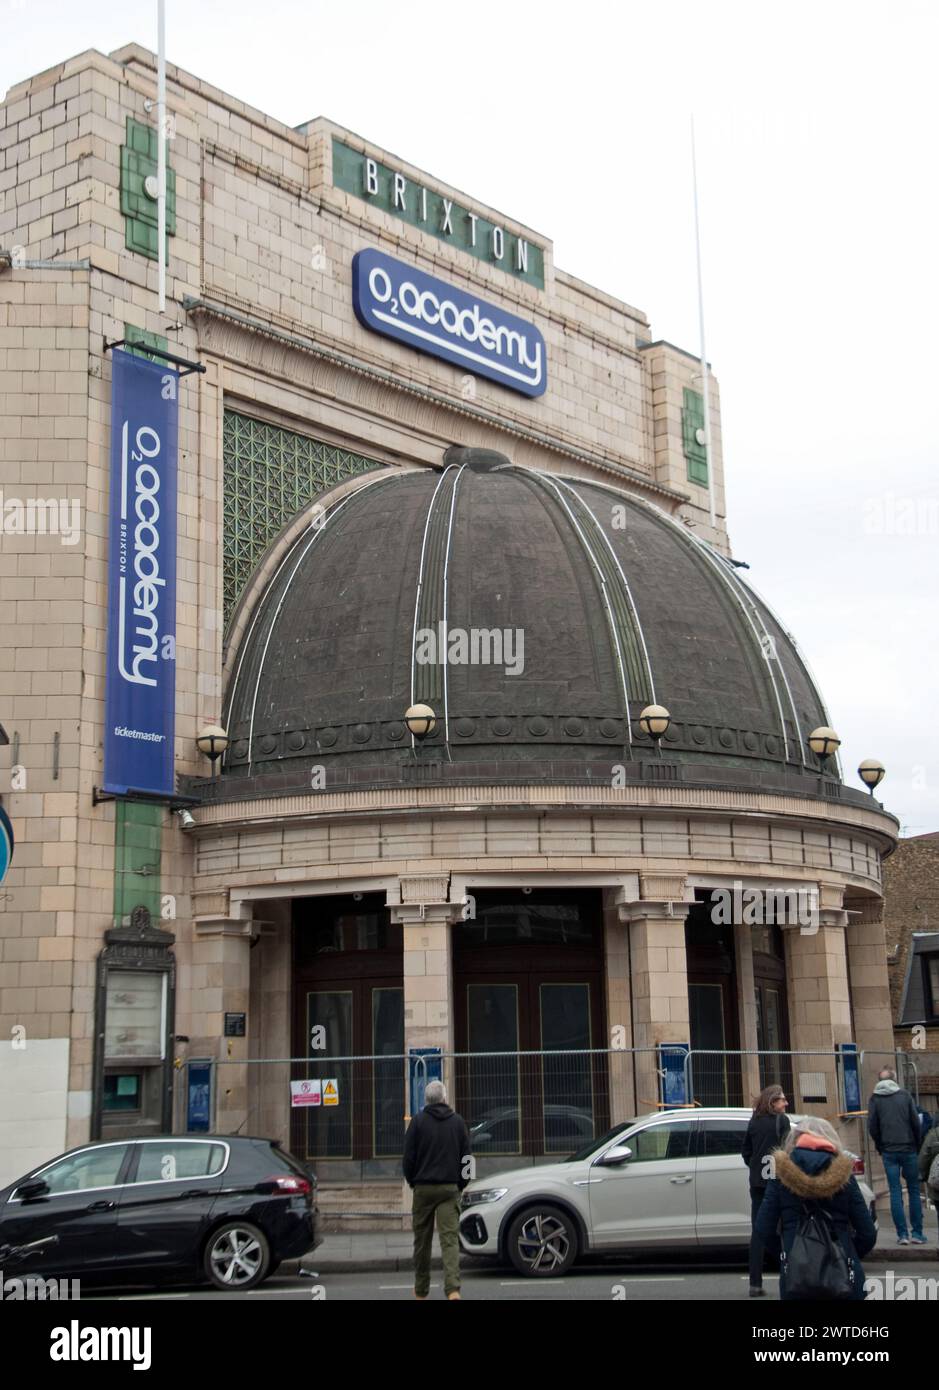 Brixton Academy Cinema; Brixton, Londra, Regno Unito - attualmente chiuso e non in uso, ma in fase di ristrutturazione. Foto Stock